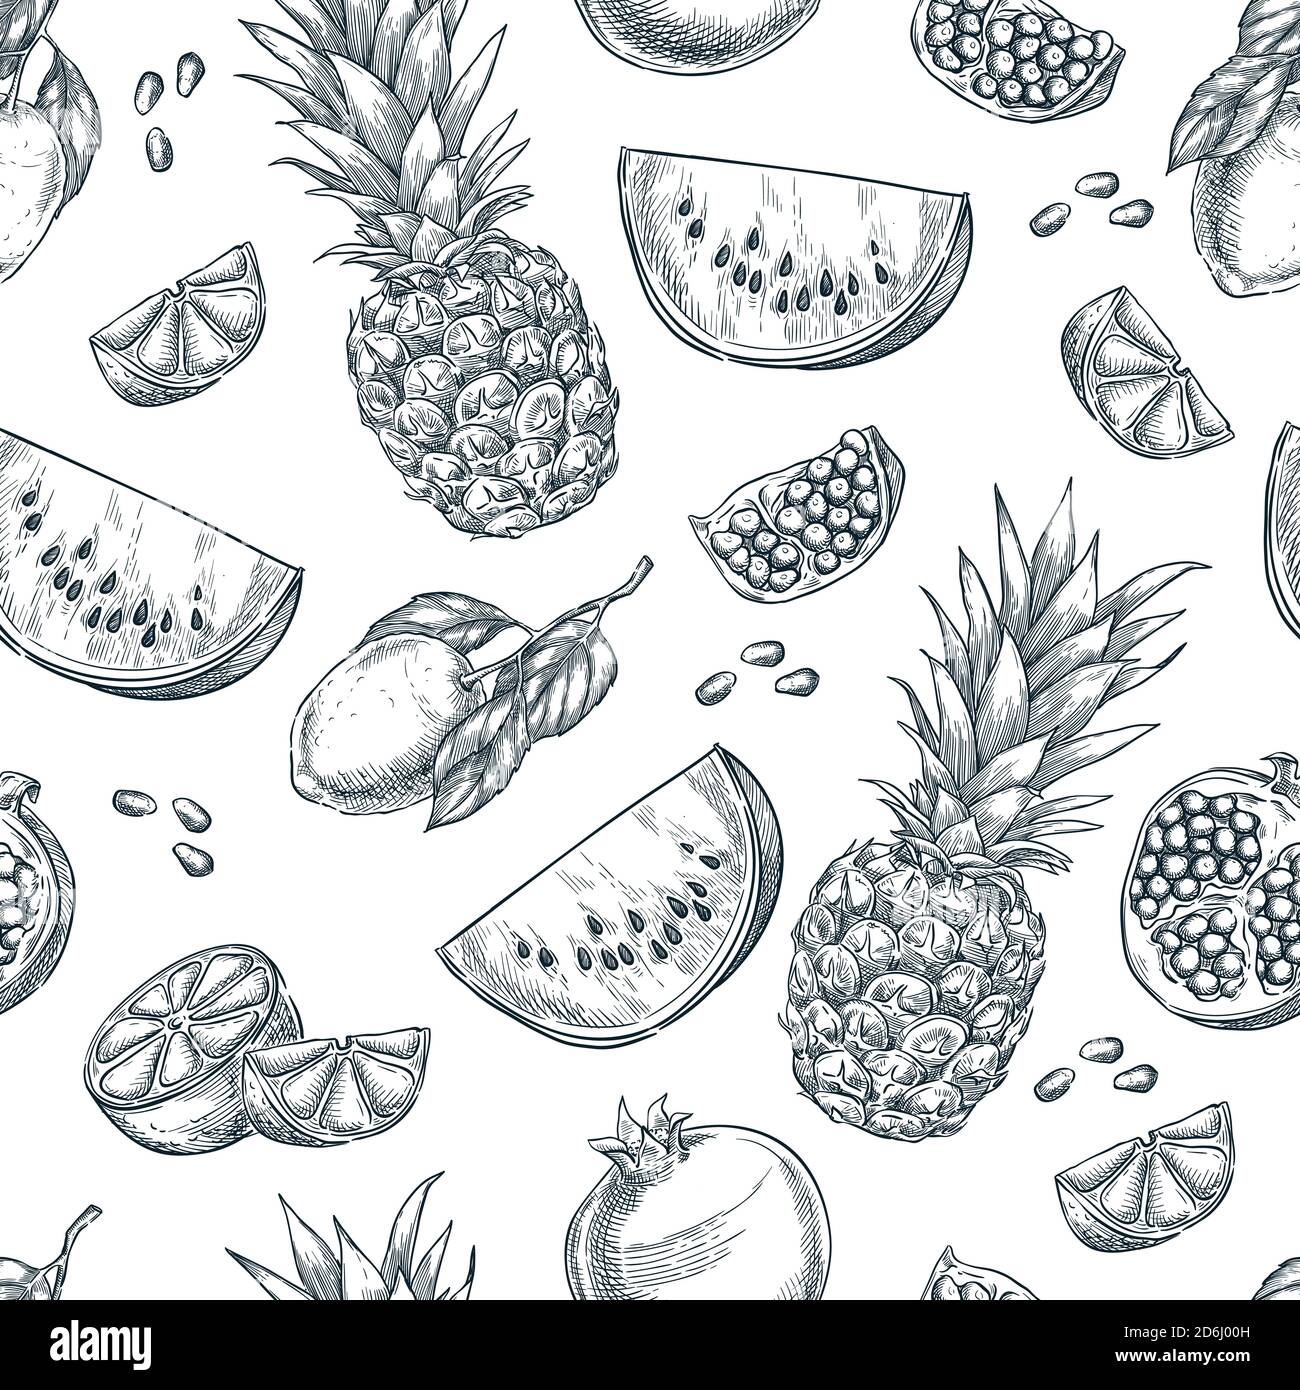 Tropische Früchte nahtloses Vektor-Muster. Skizze handgezeichnete Illustration von Ananas, Zitrone, Wassermelone, Granatapfel. Mode Textildruck oder Rückendruck Stock Vektor